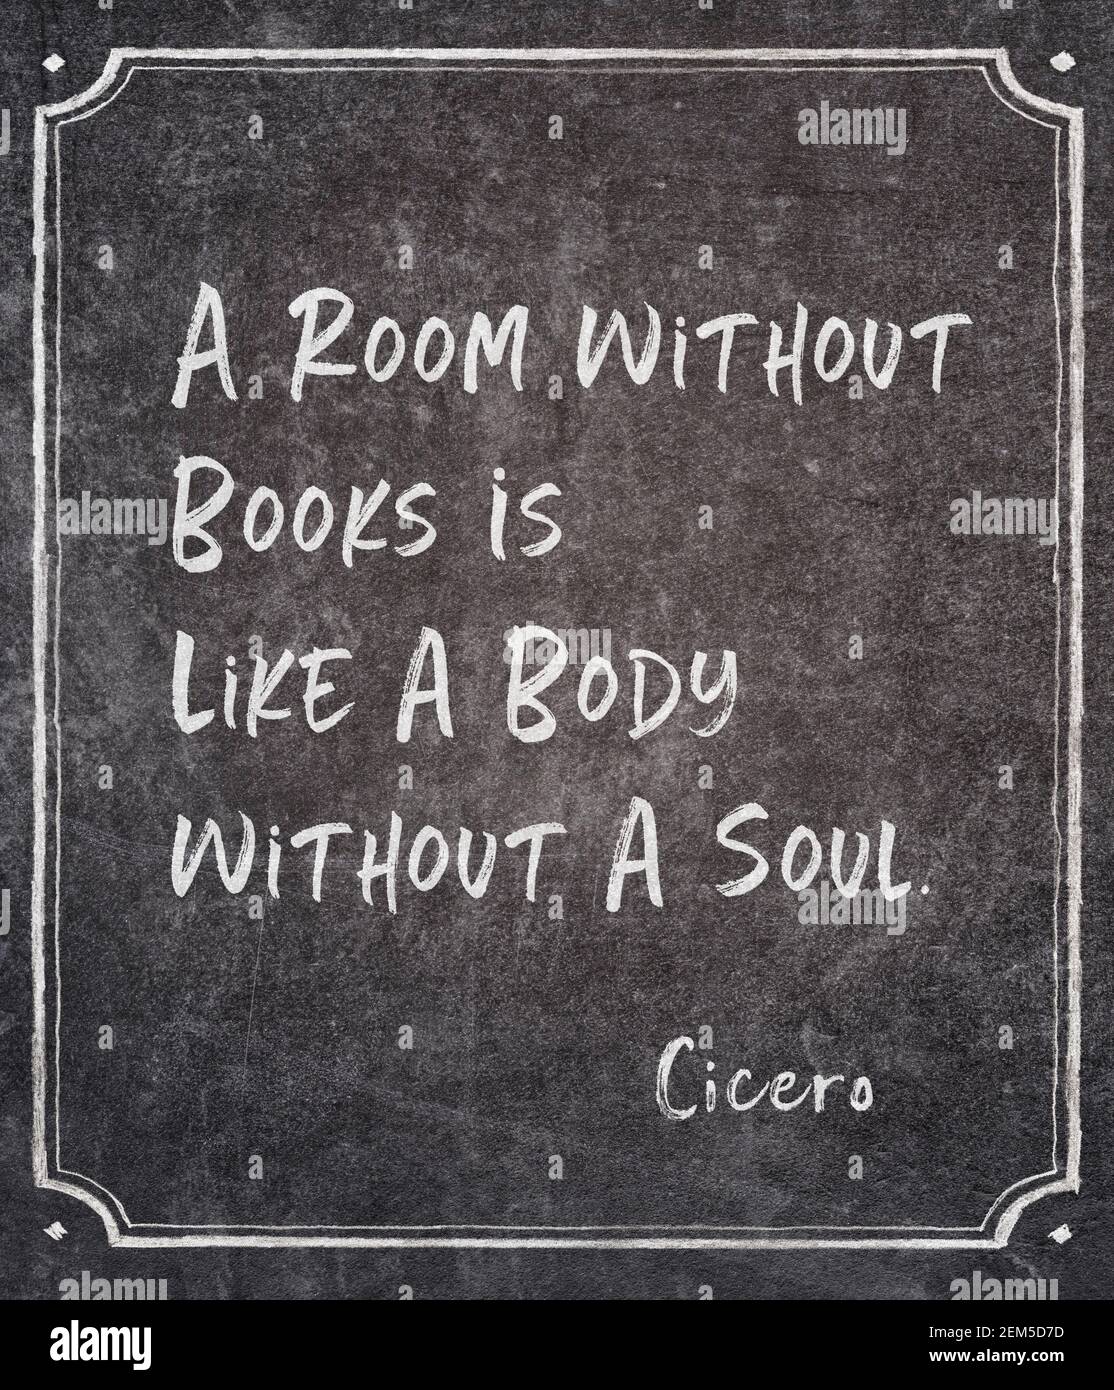 Une chambre sans livres est comme un corps sans un Soul - ancien philosophe romain Cicero citation écrite sur encadré tableau noir Banque D'Images